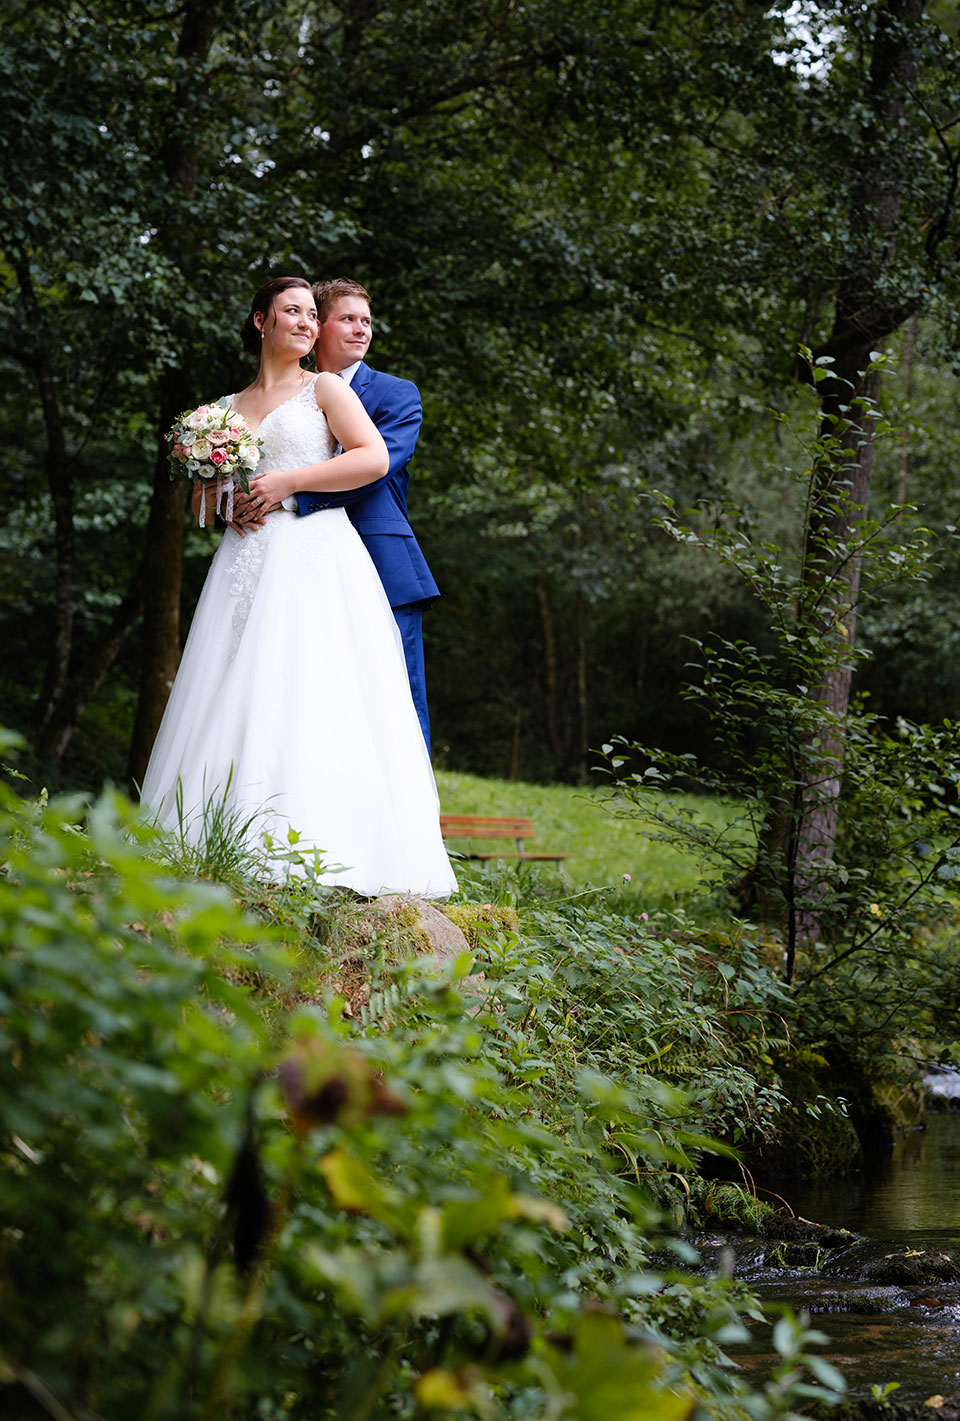 Brautpaar im Hochzeitskleid und Anzug posiert im Grünen, umgeben von Bäumen und Natur.